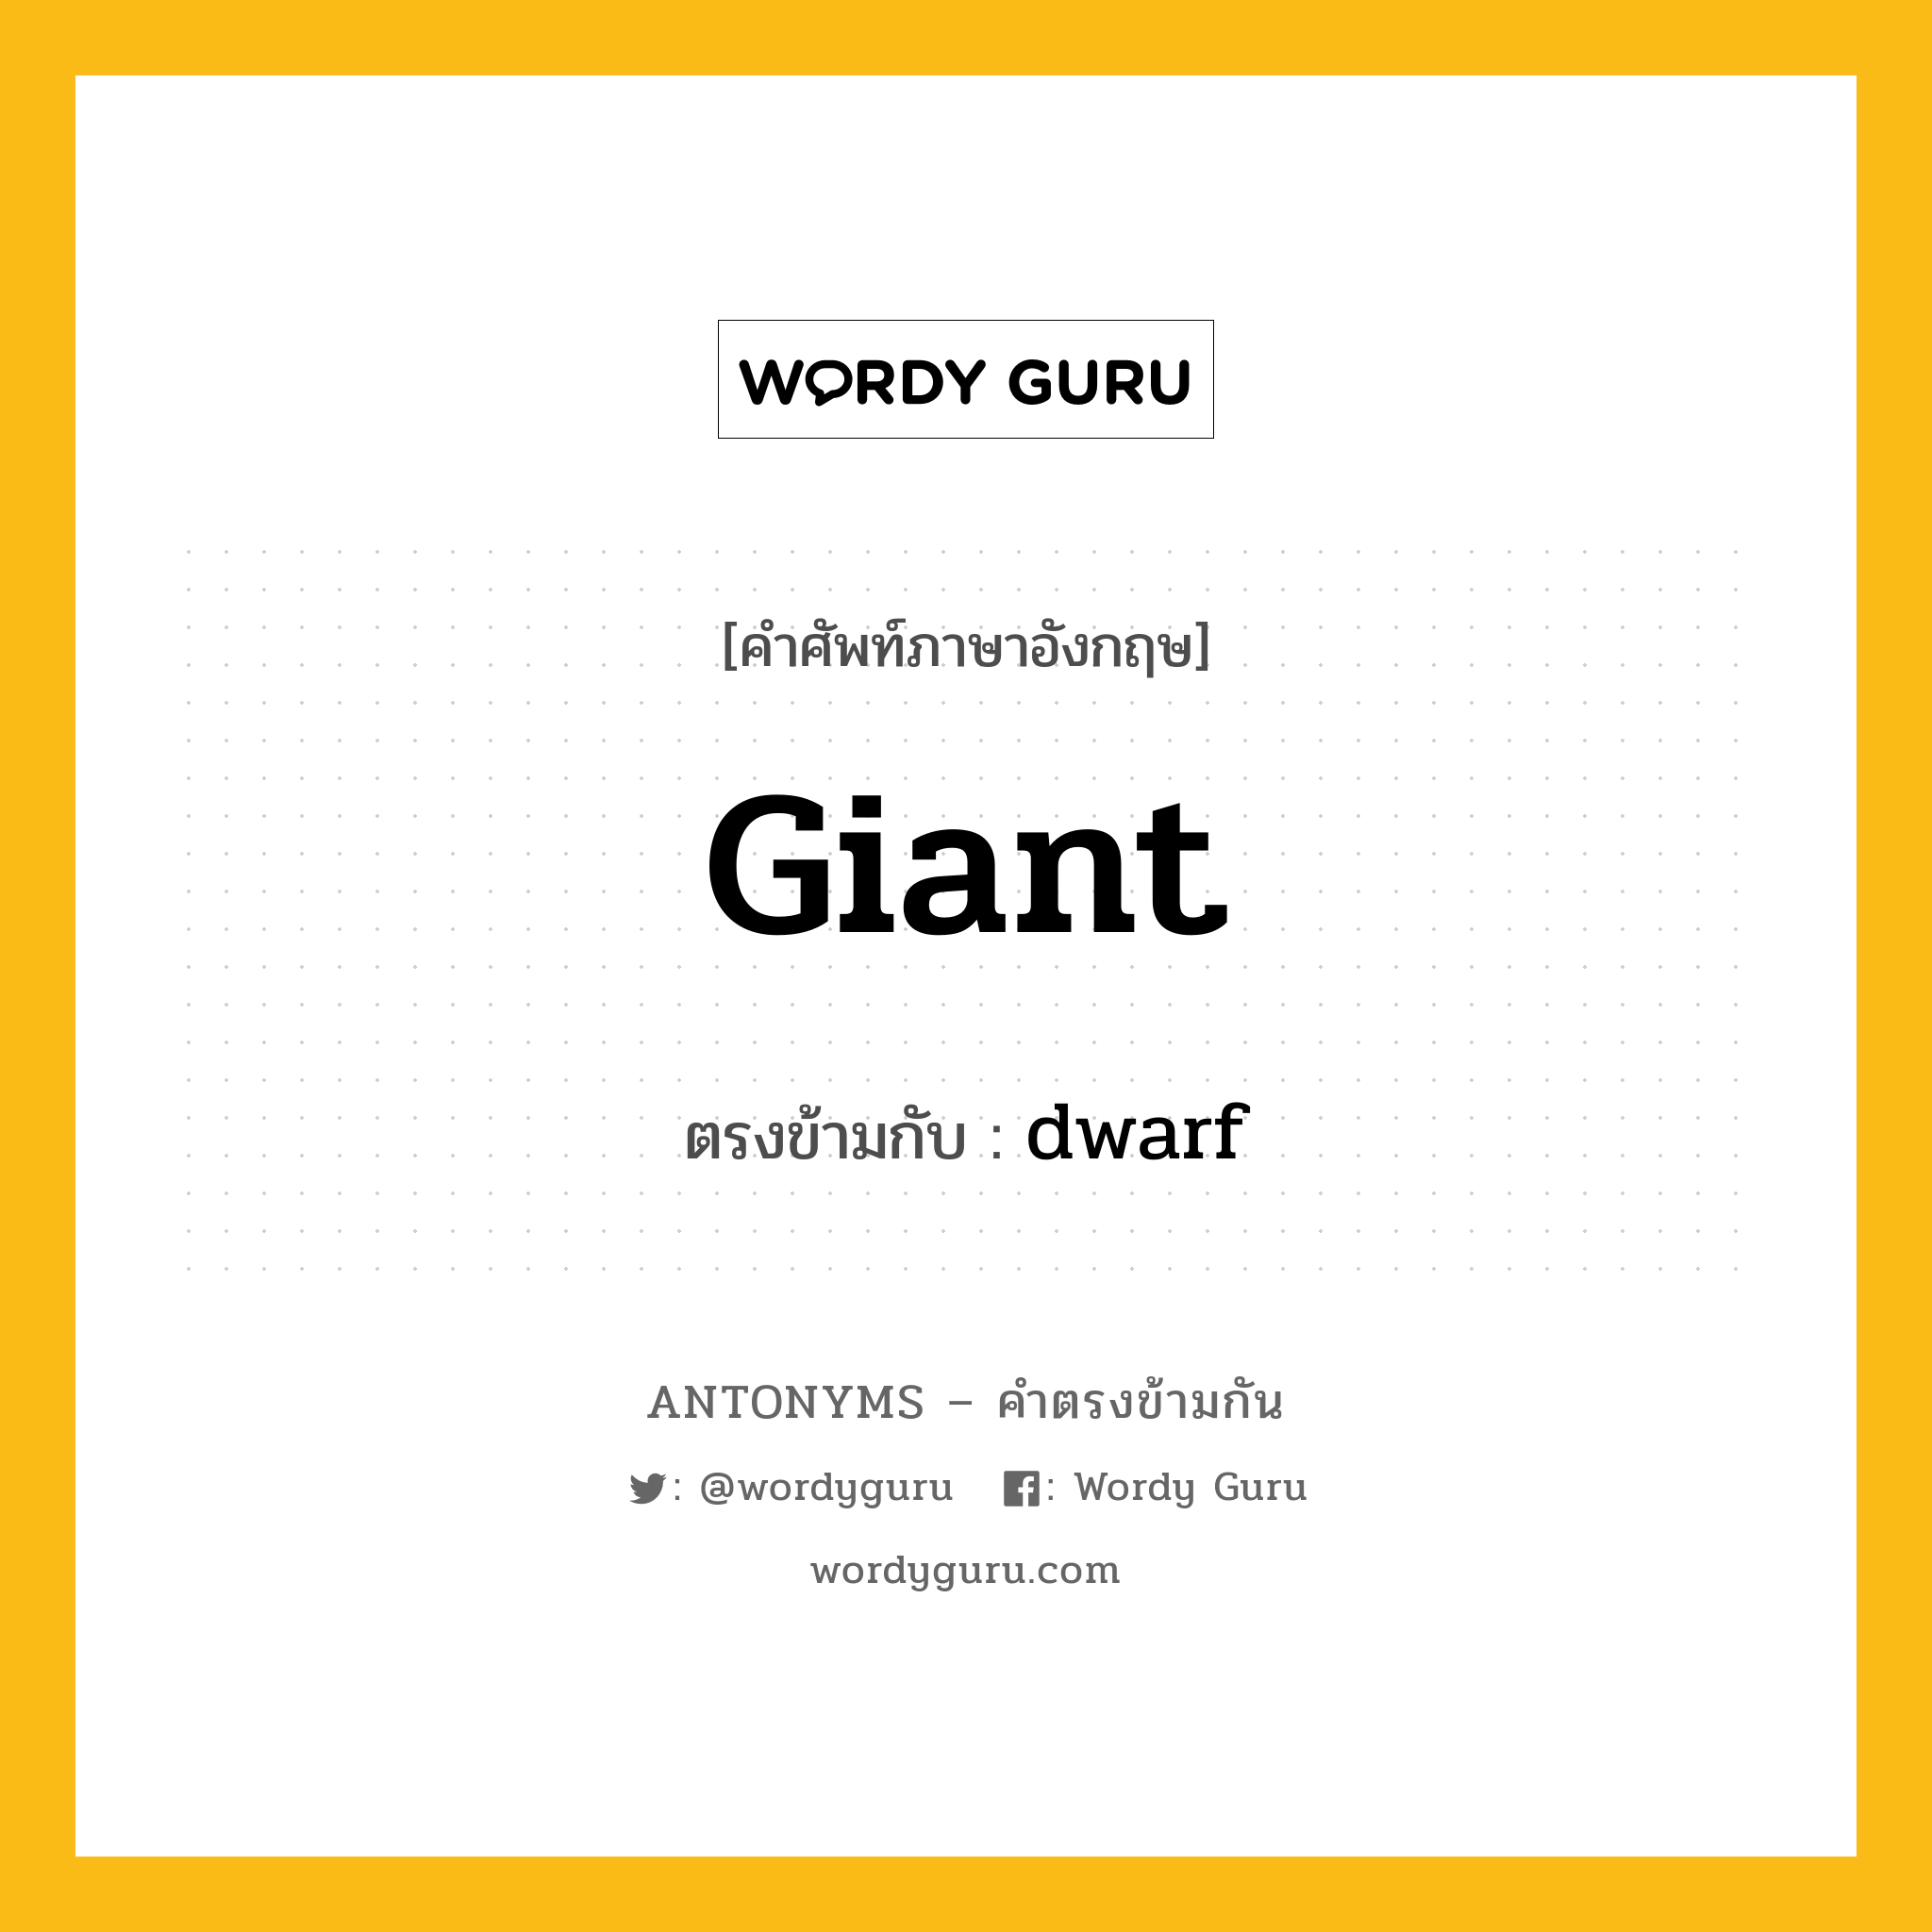 giant เป็นคำตรงข้ามกับคำไหนบ้าง?, คำศัพท์ภาษาอังกฤษ giant ตรงข้ามกับ dwarf หมวด dwarf